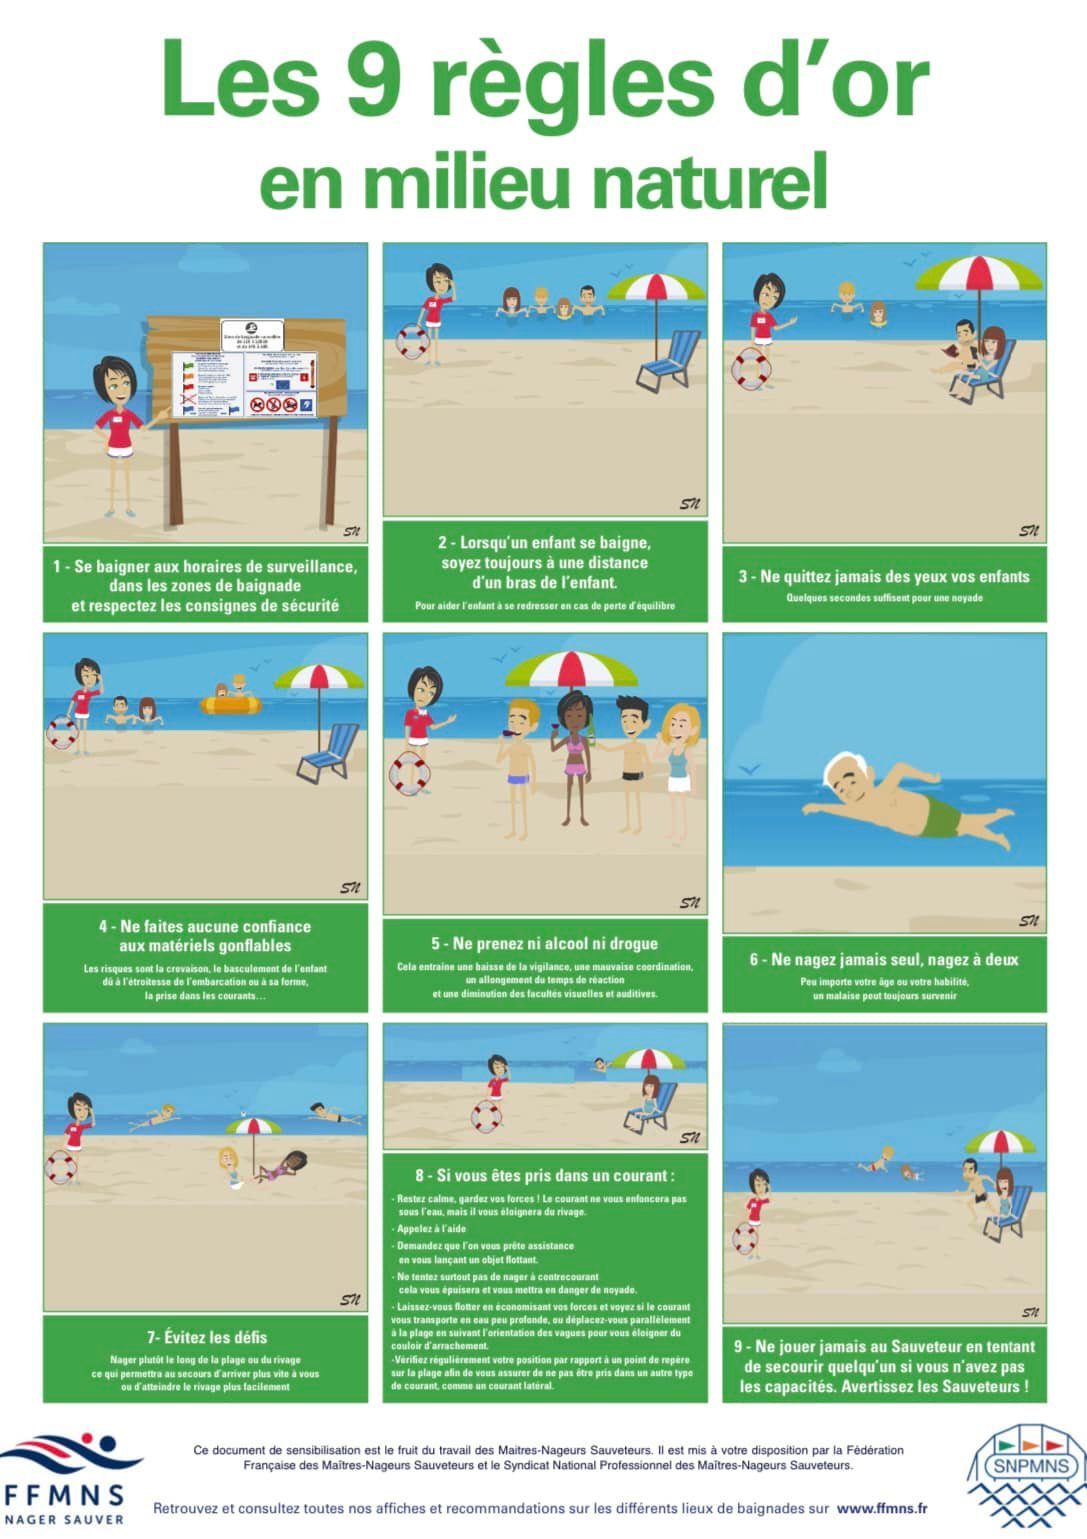 9 regles d'or pour la surveillance des baignades